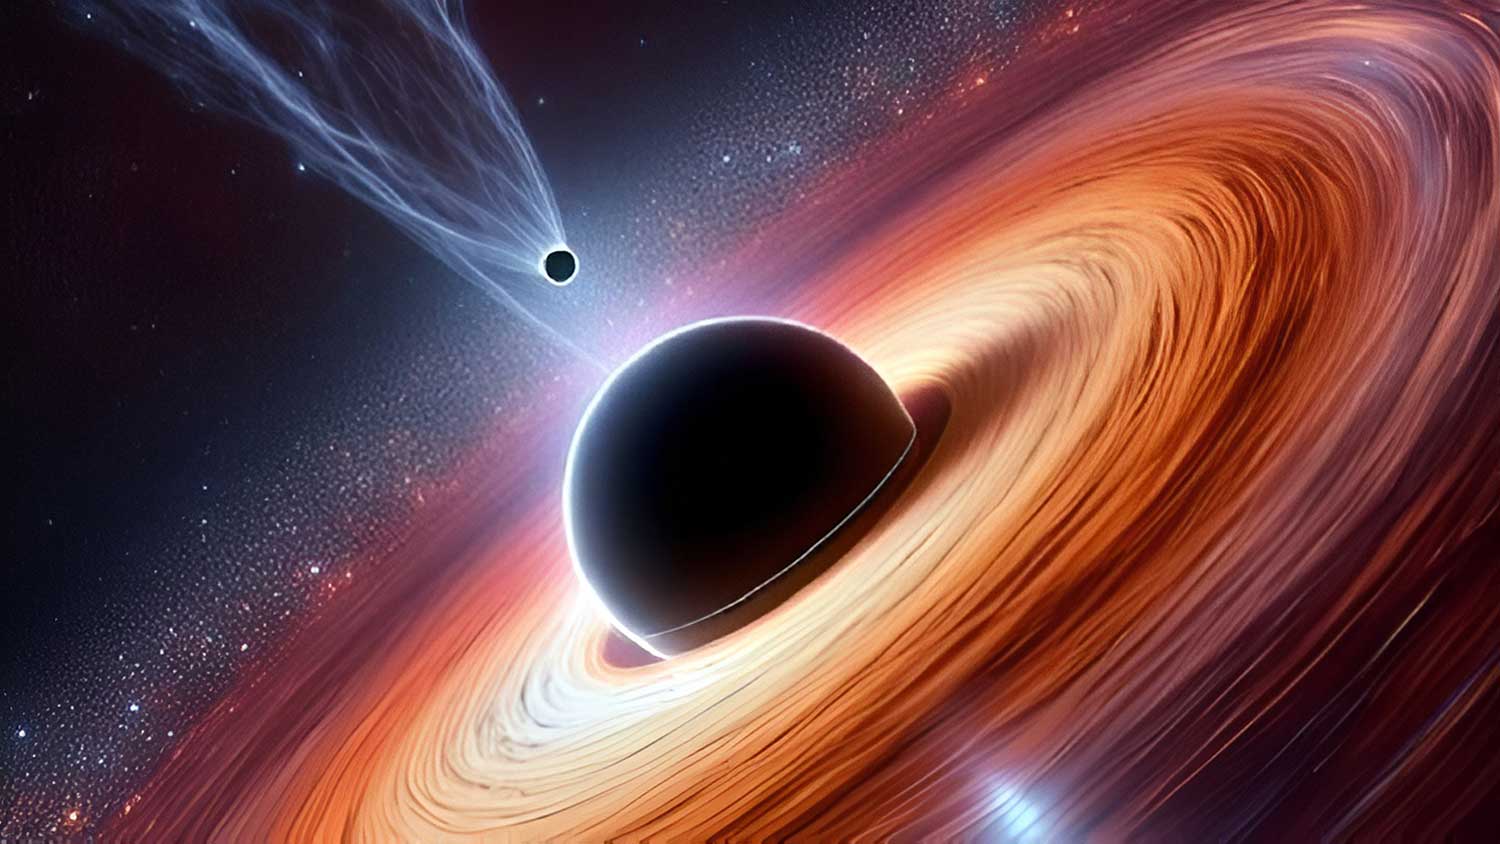 Cientistas observam buraco negro com 'soluço' e refazem teoria | Mundo & História